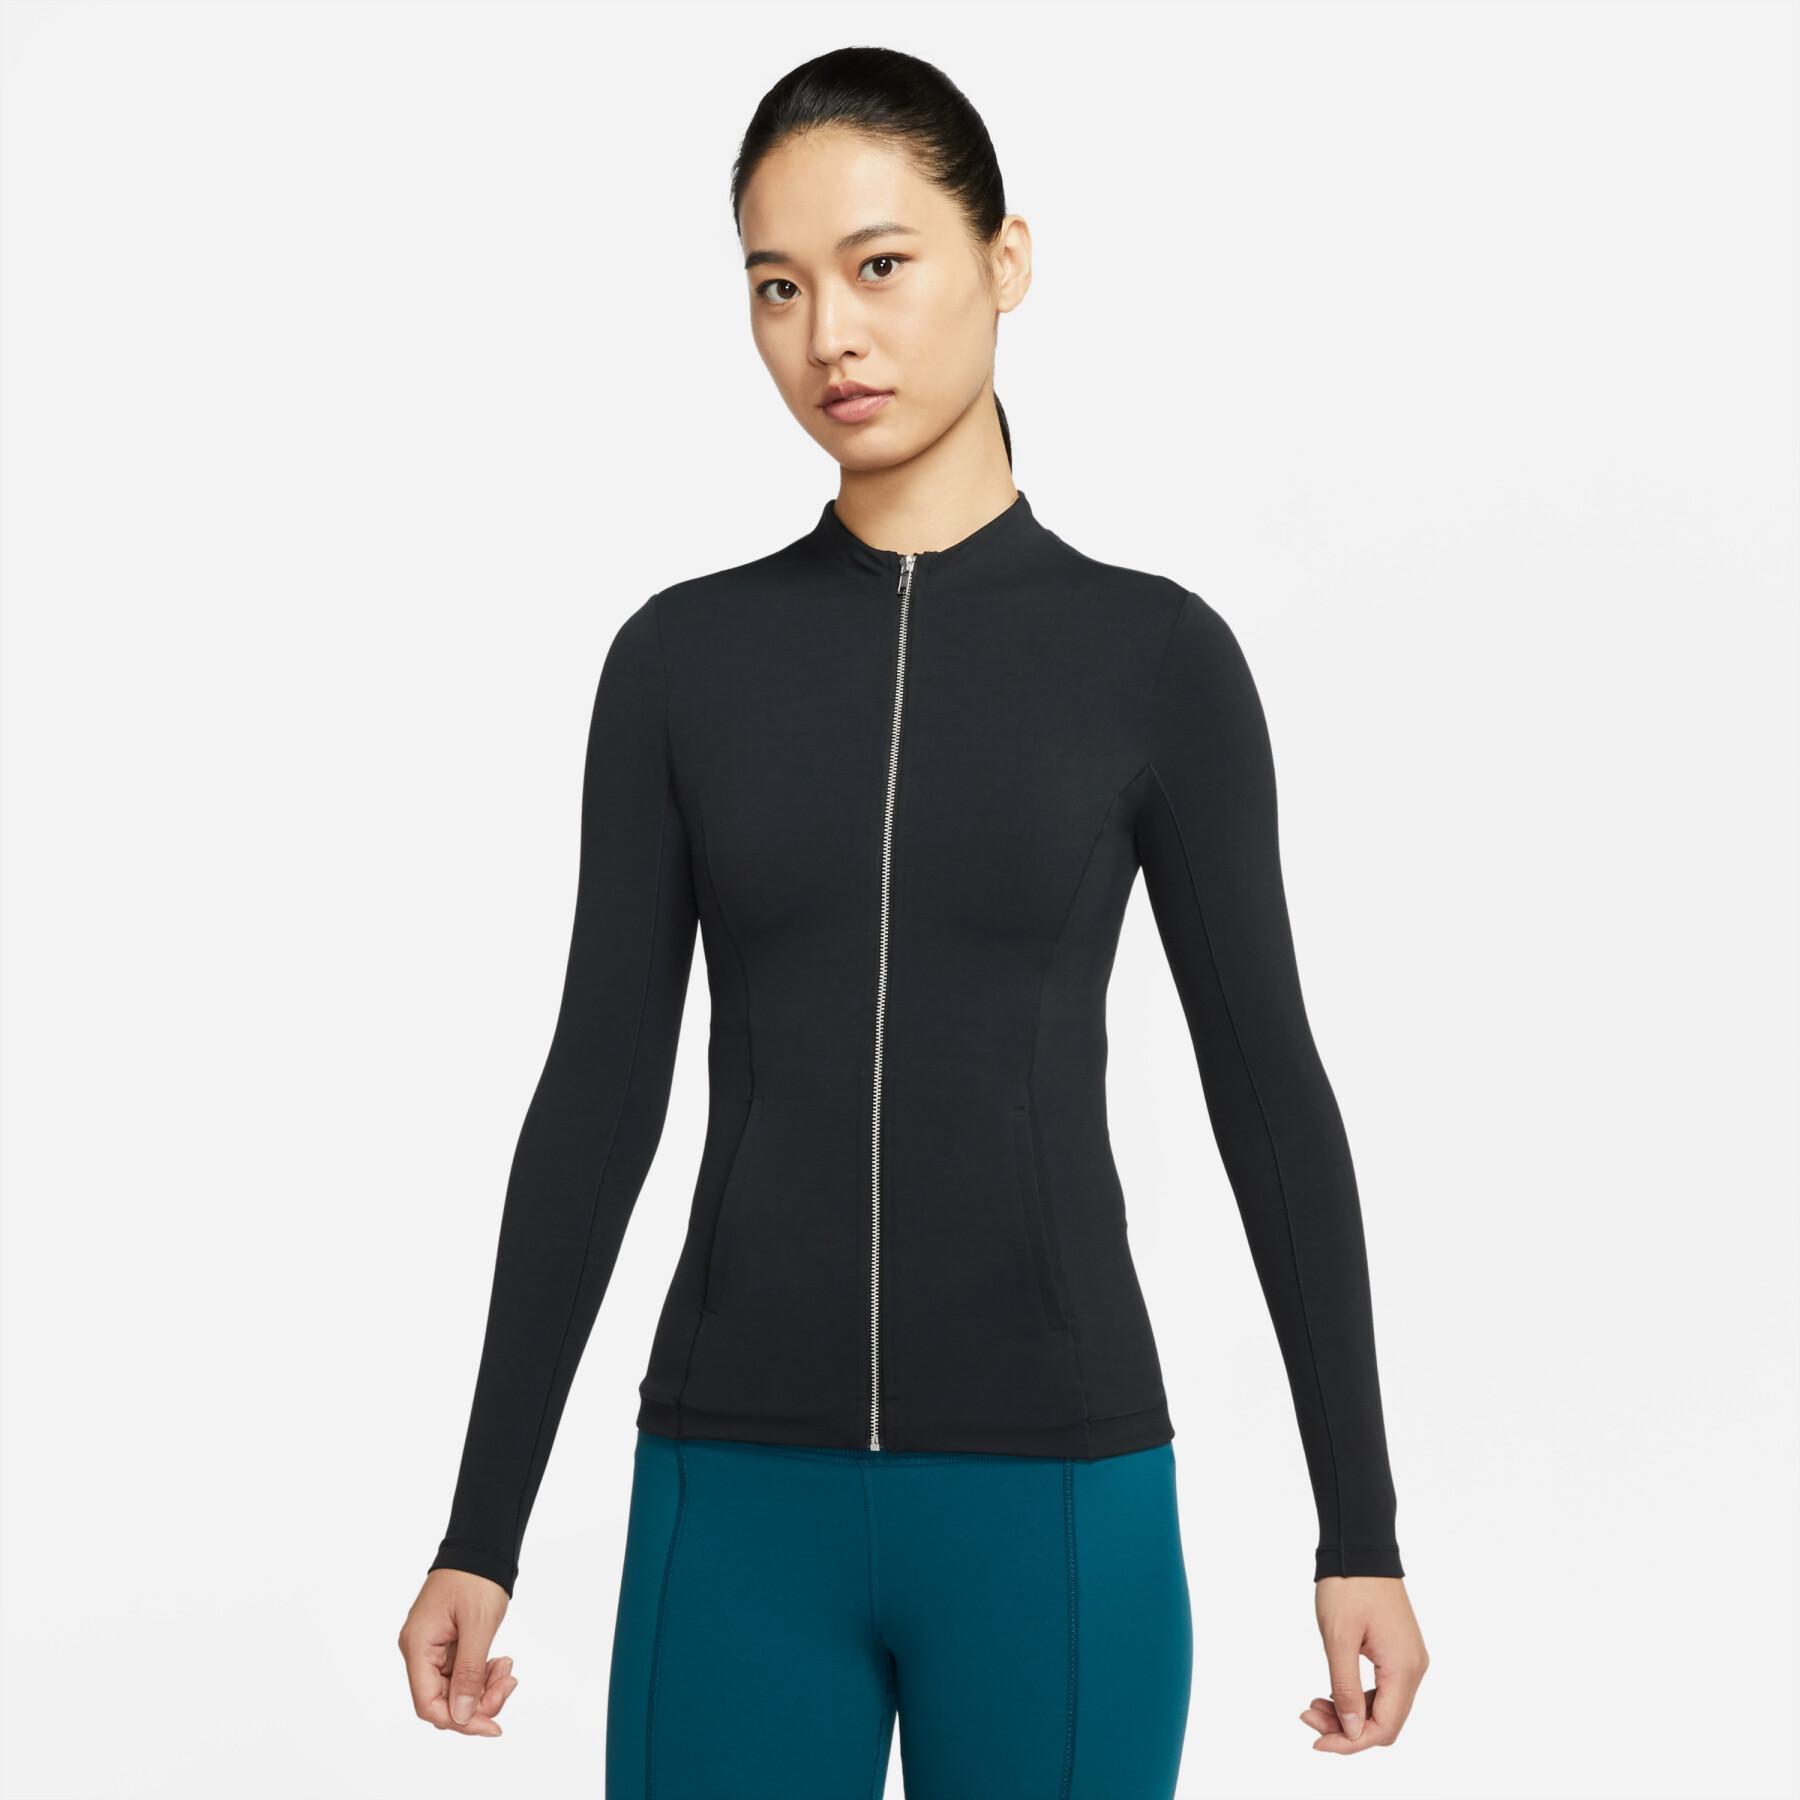 Women's sweat jacket Nike dynamic fit luxe fttd